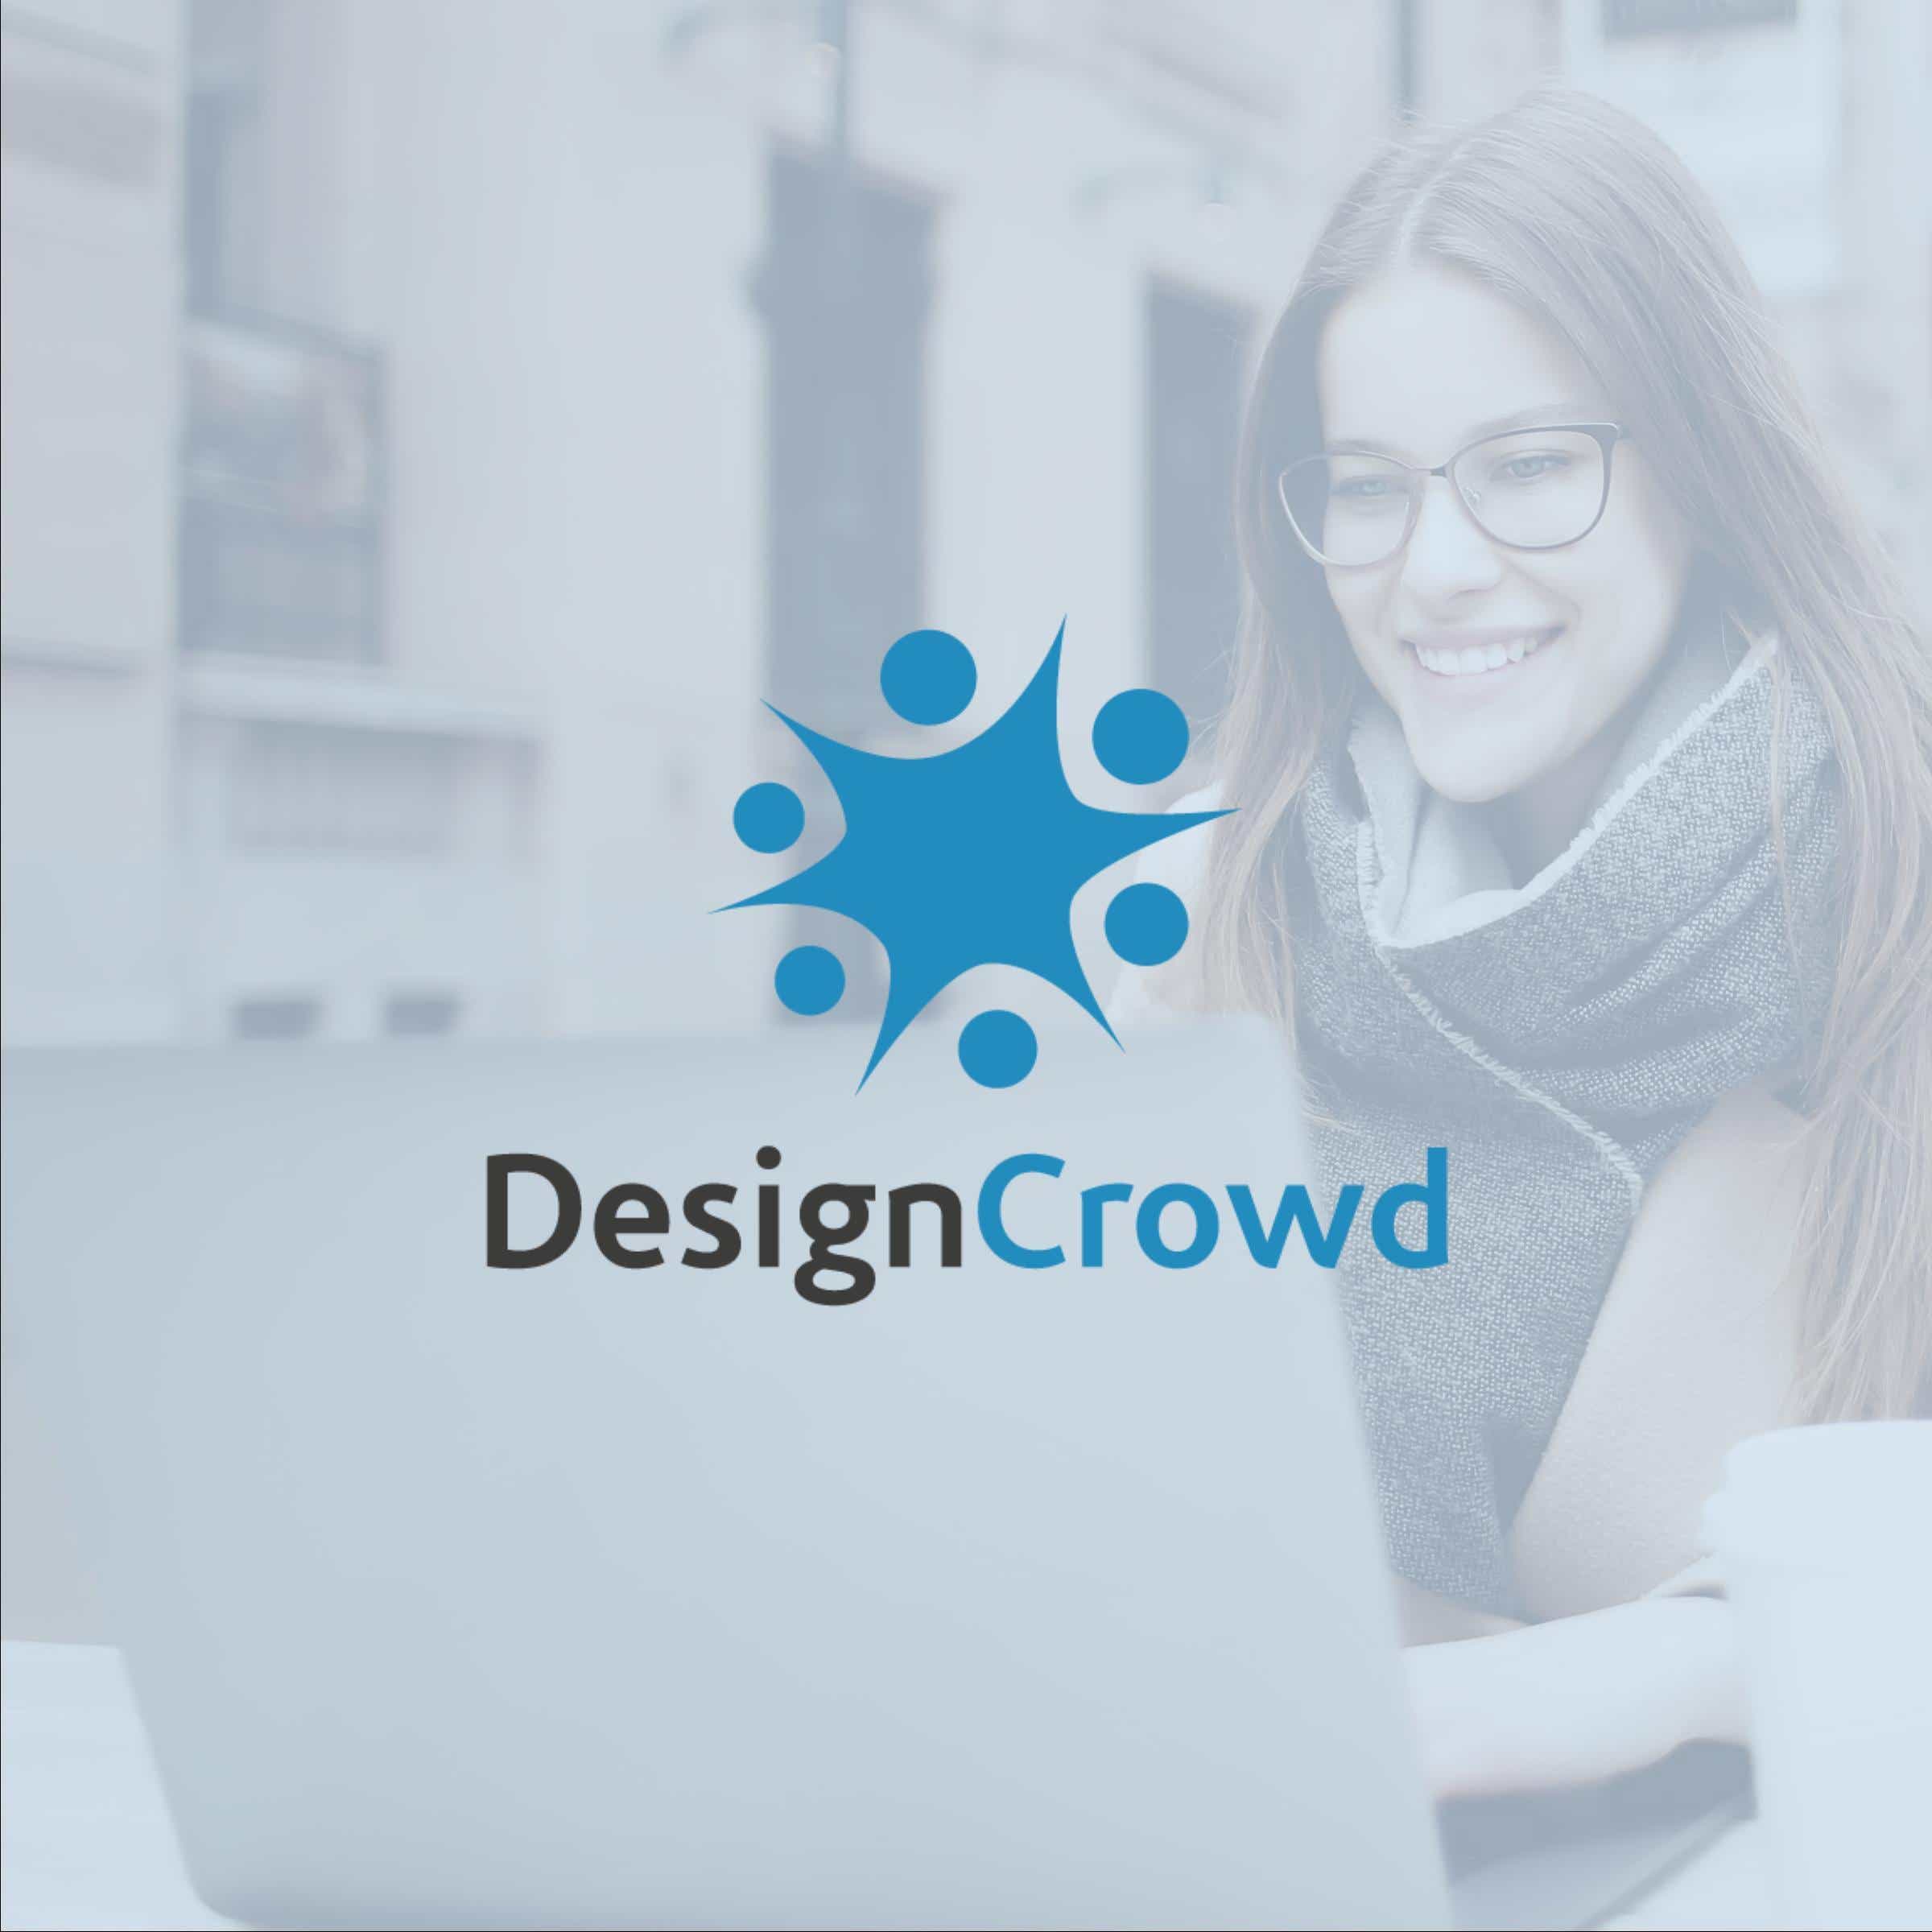 موقع designCrowd للربح من مواقع العمل الحر